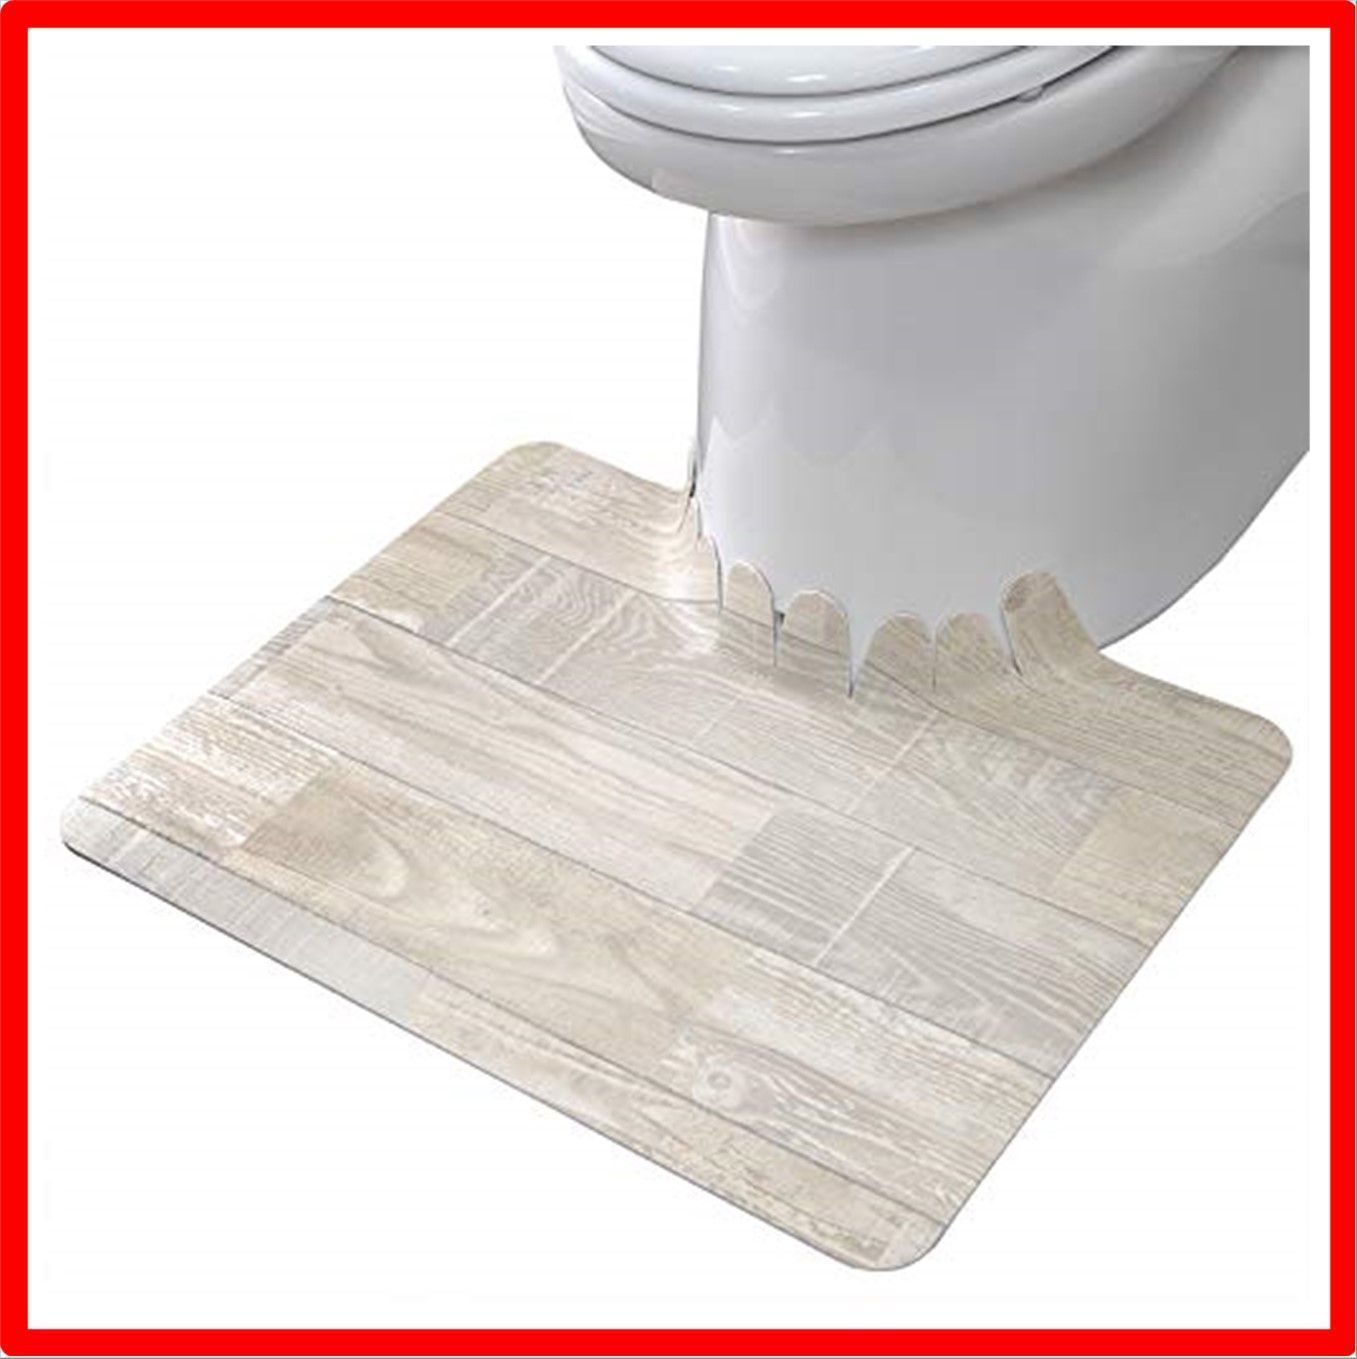 サンコー トイレマット 滑り止め ずれない 拭ける 床汚れ防止 ショート ベージュ 無地 55×43cm おくだけ吸着 日本製 KK-53 ショ